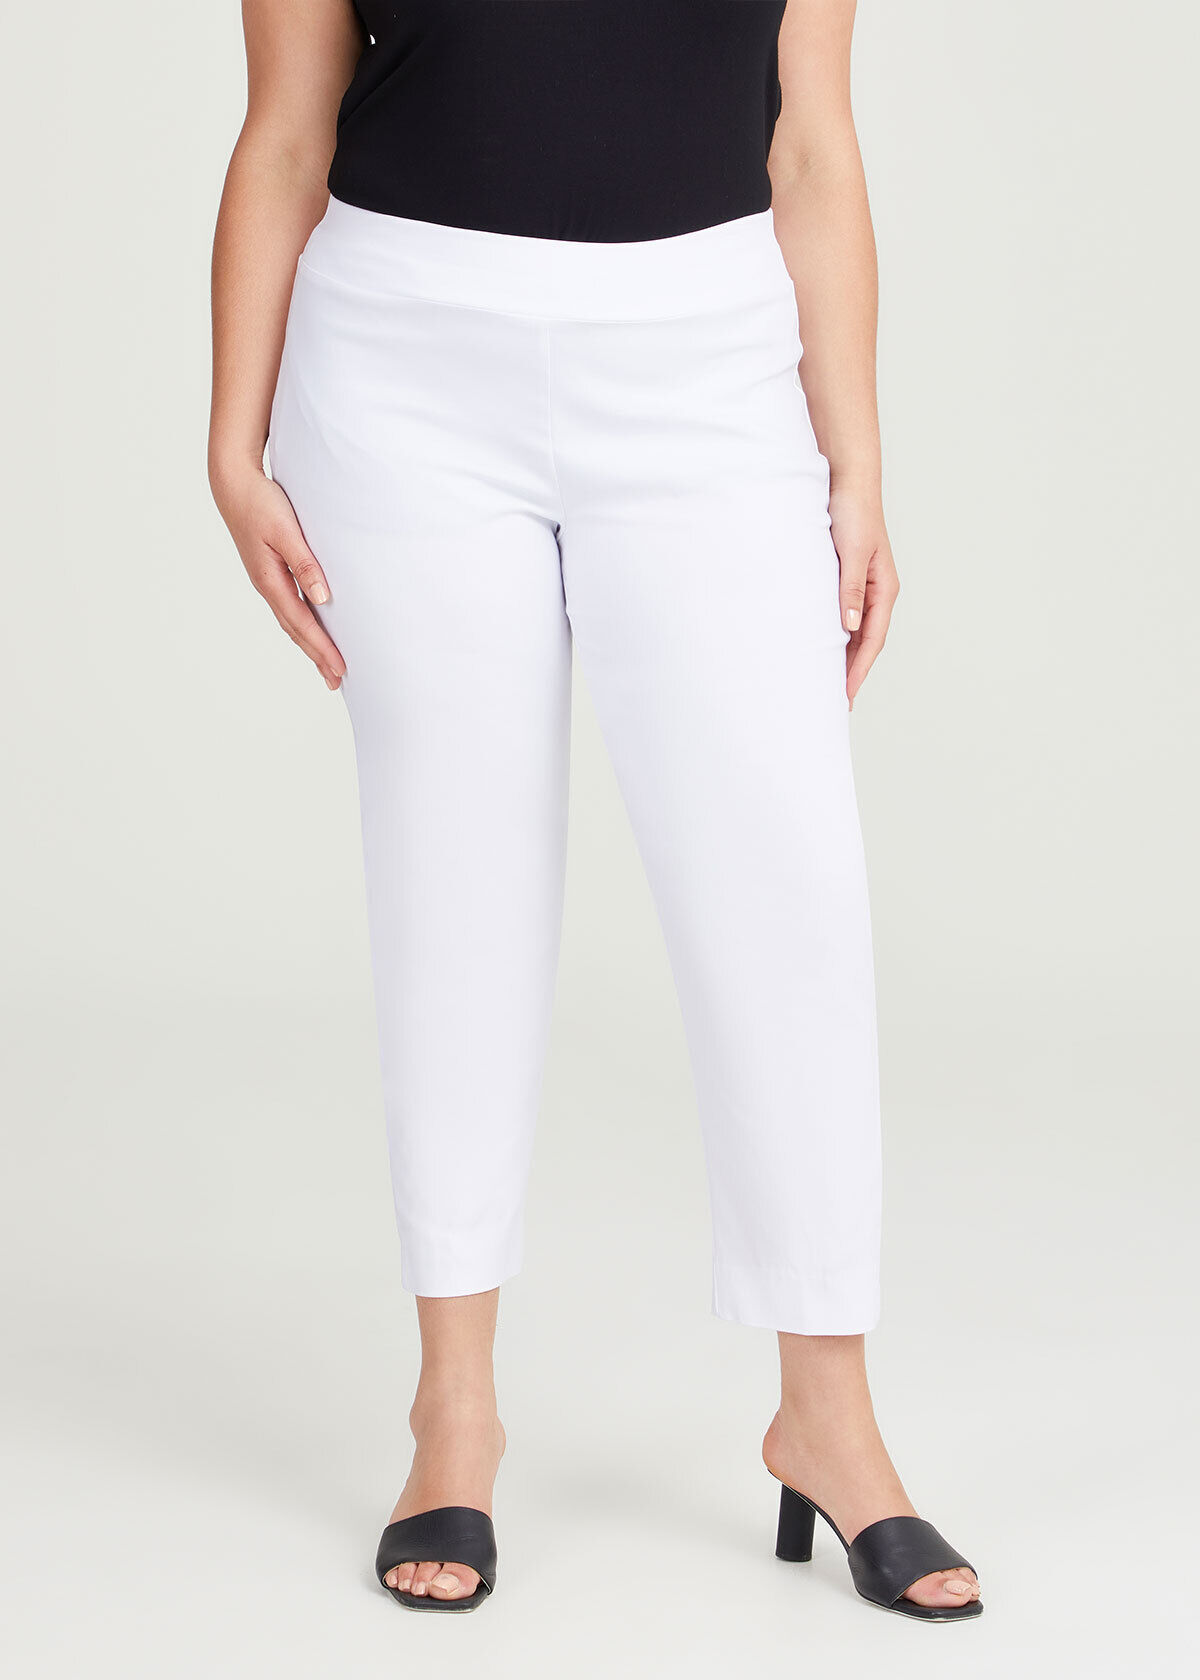 Buy White Straight Fit Plus Size Trouser Pants Online - Aurelia